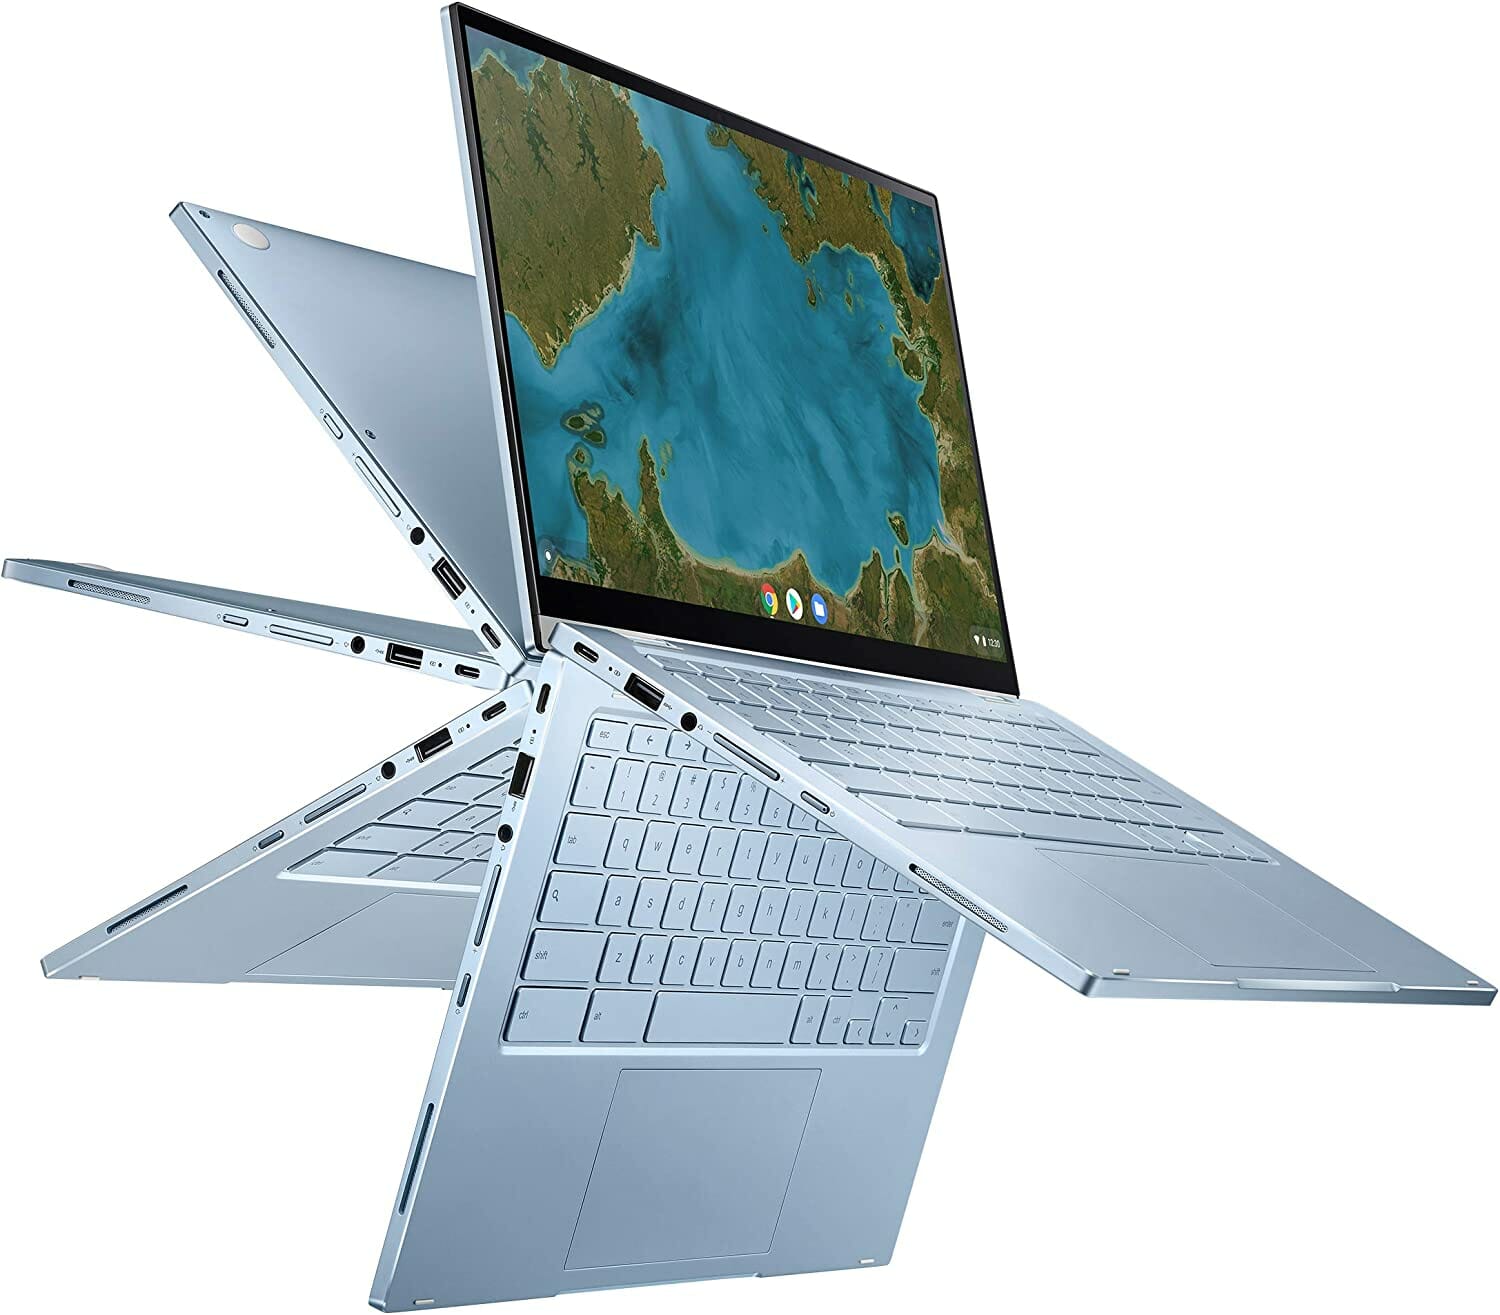 
ASUS Chromebook Flip C433 2 in 1 Laptop